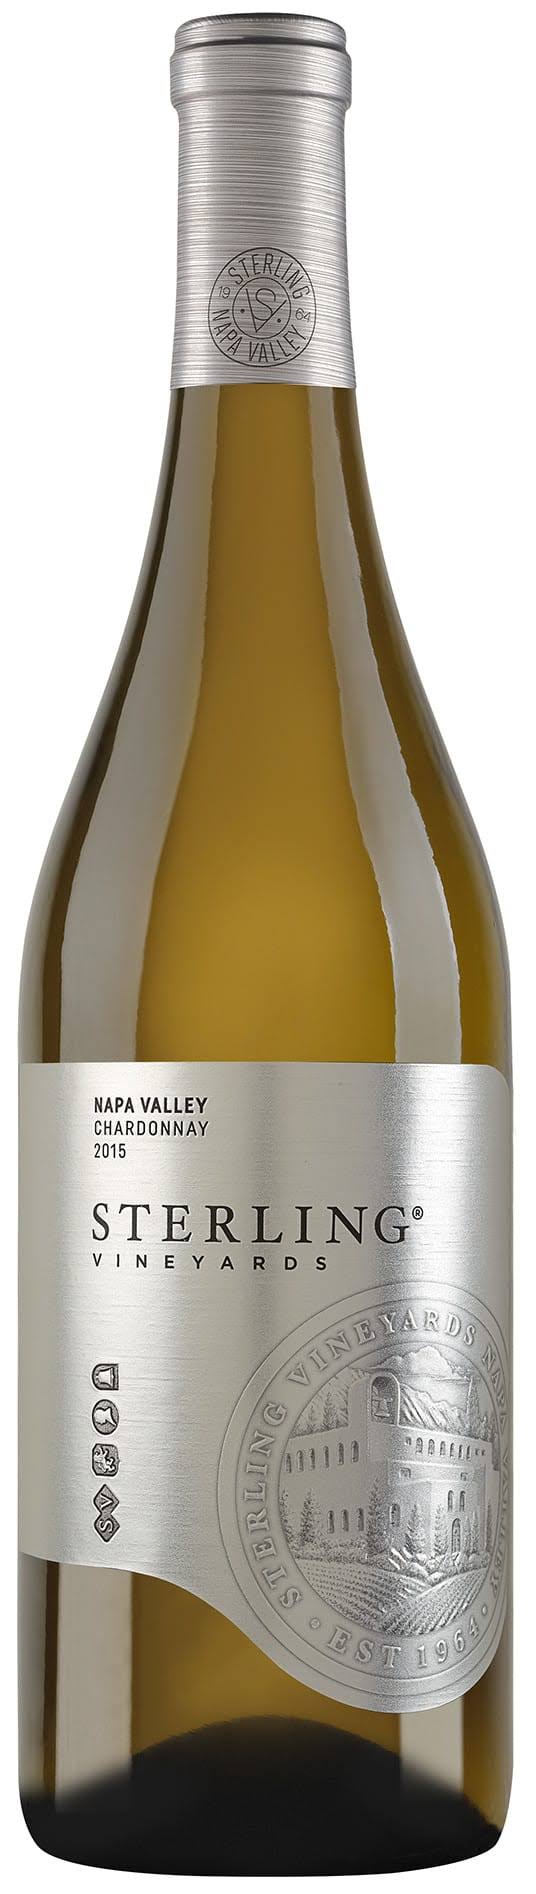 Sterling Vineyard's Chardonnay